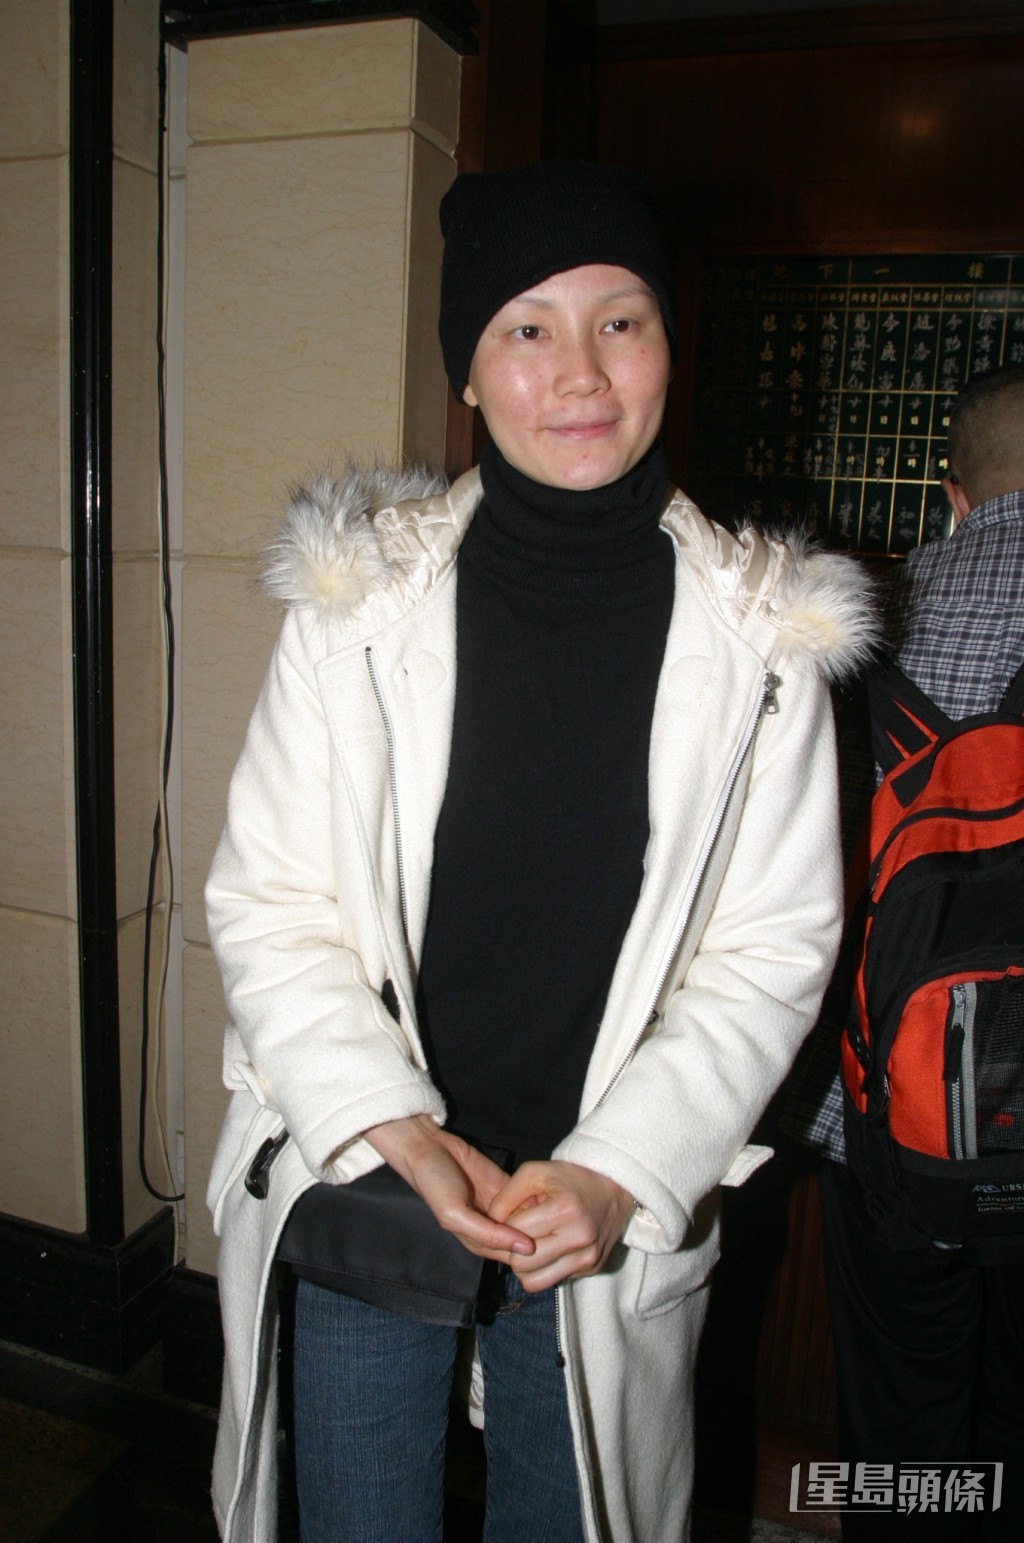 温裕红2005年不幸确诊患上乳癌，​在化疗期间不停呕吐、脱发，甚至手脚麻痺又很痒，要冰敷才能抵得住。  ​